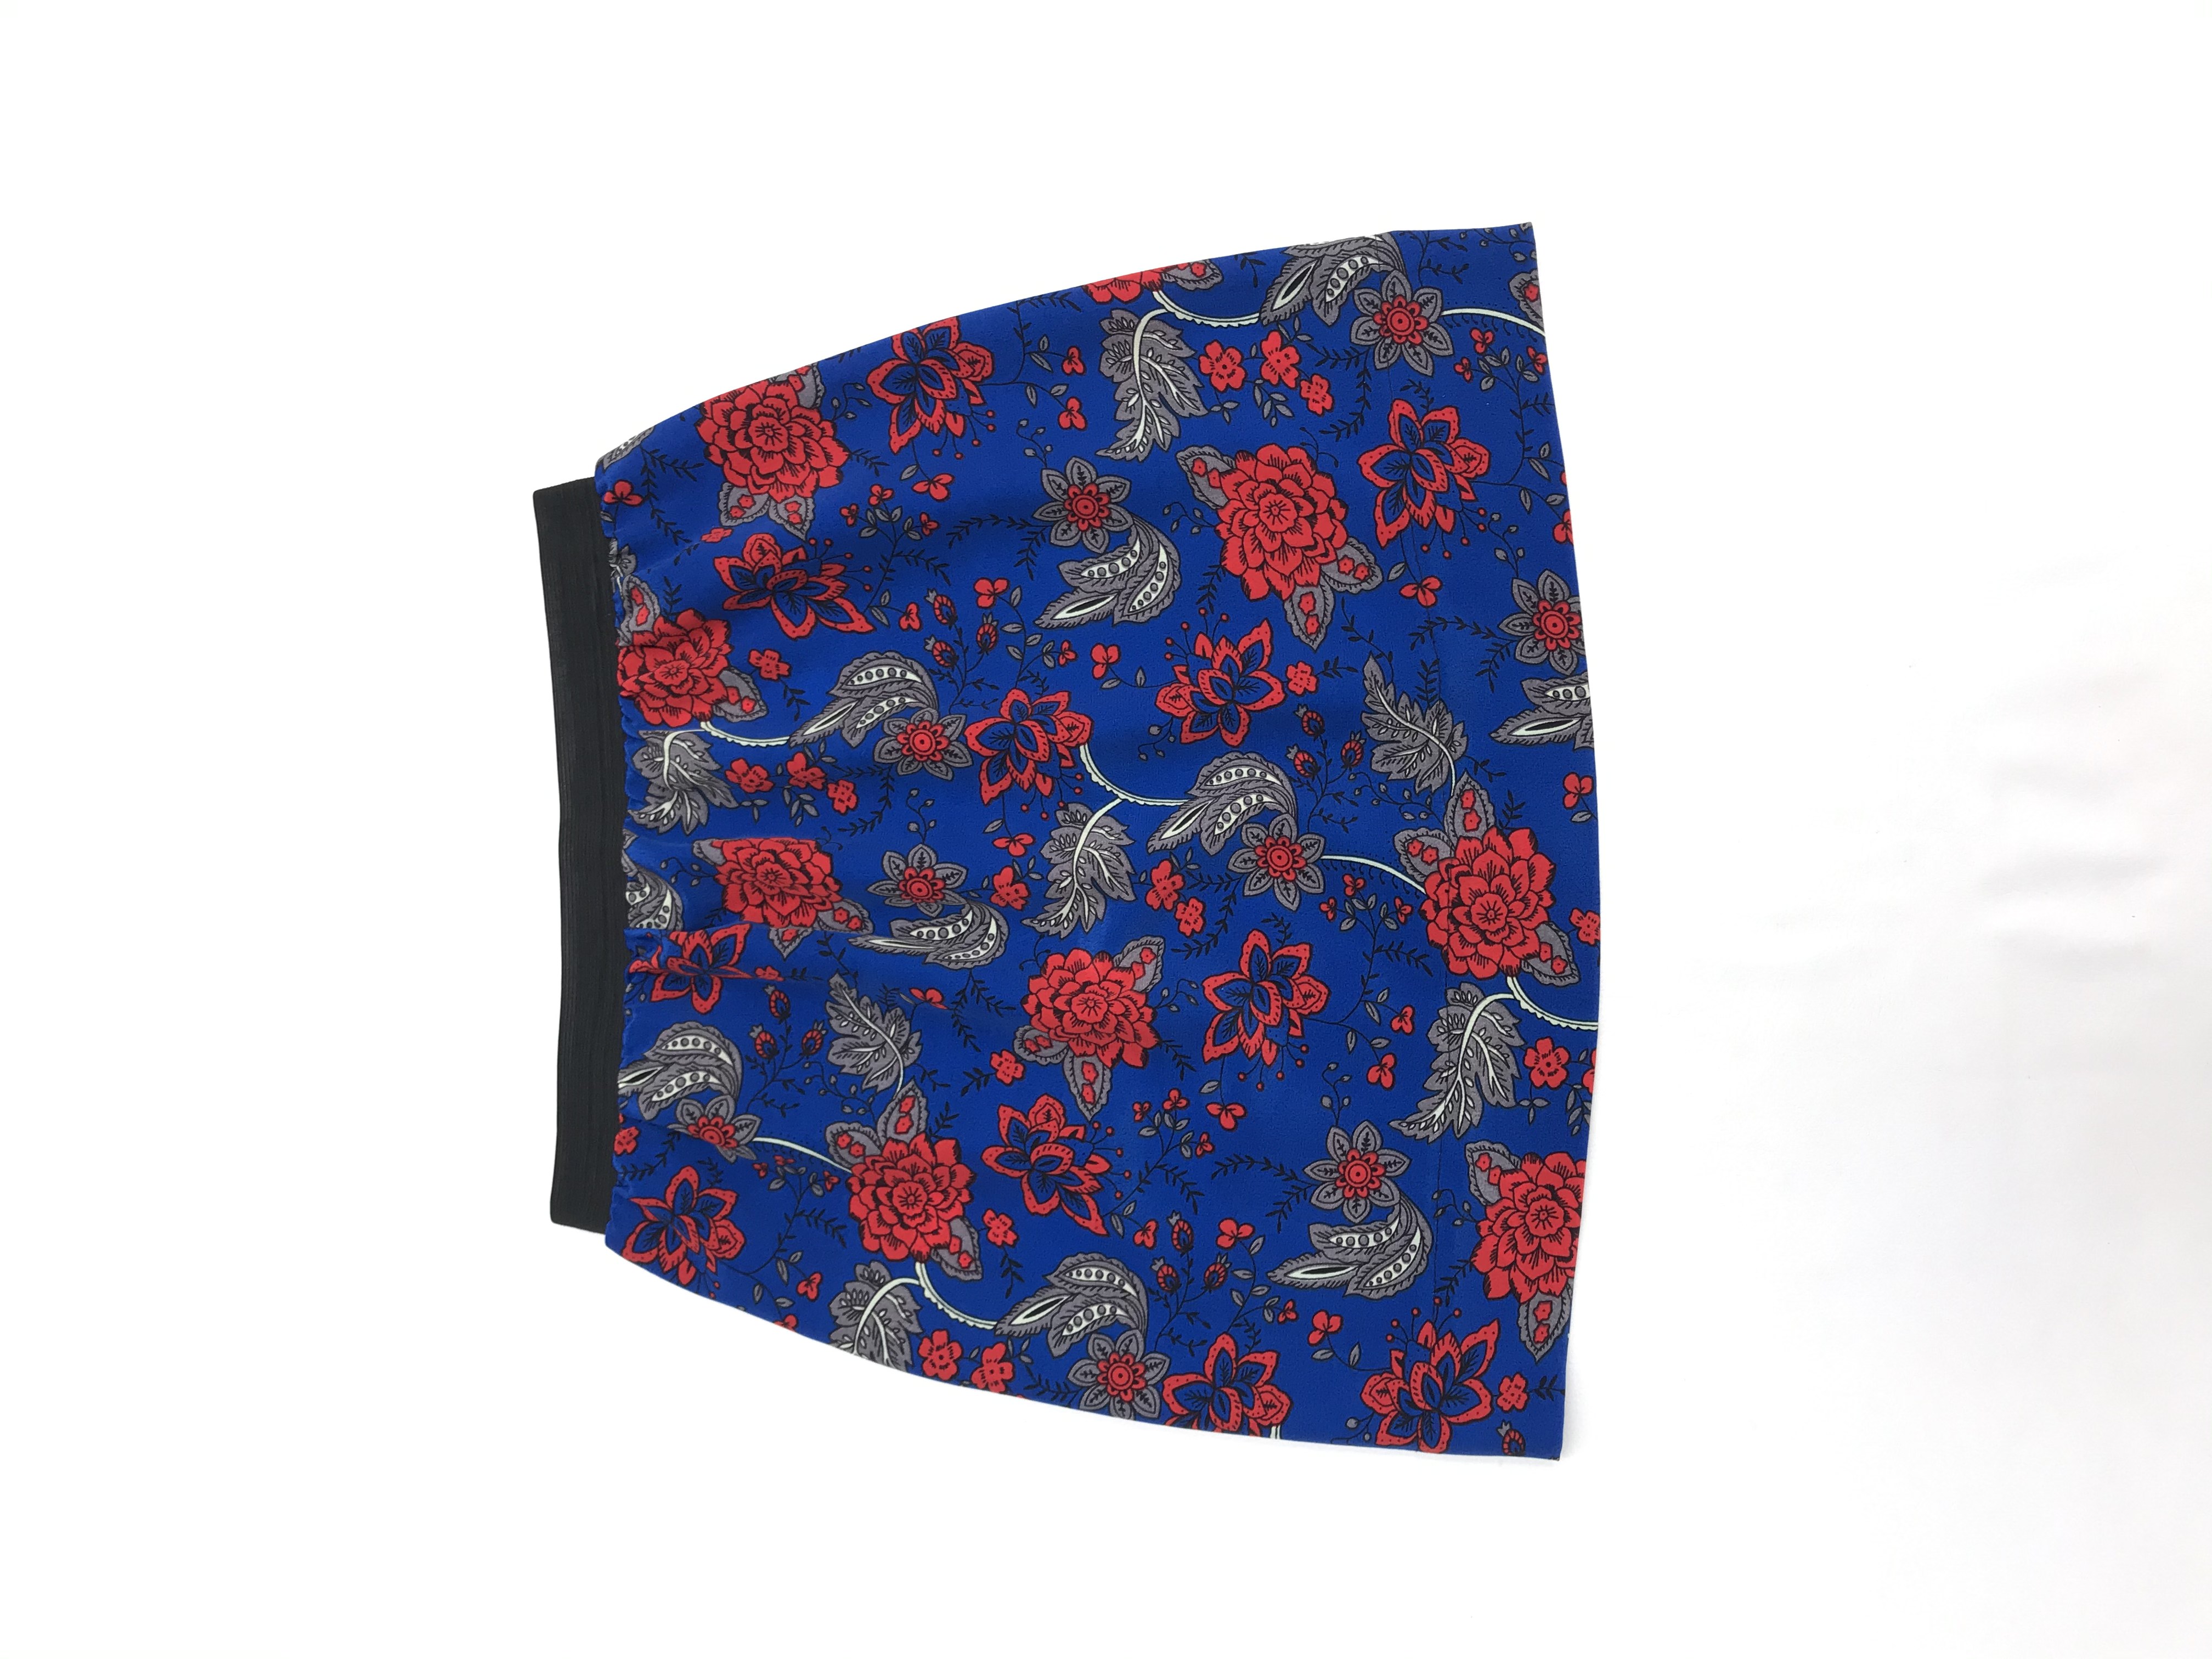 Falda azul con estampado de flores rojas y grises, tela plana tipo crepé, elástico negro en la cintura. Largo 46cm
Talla S